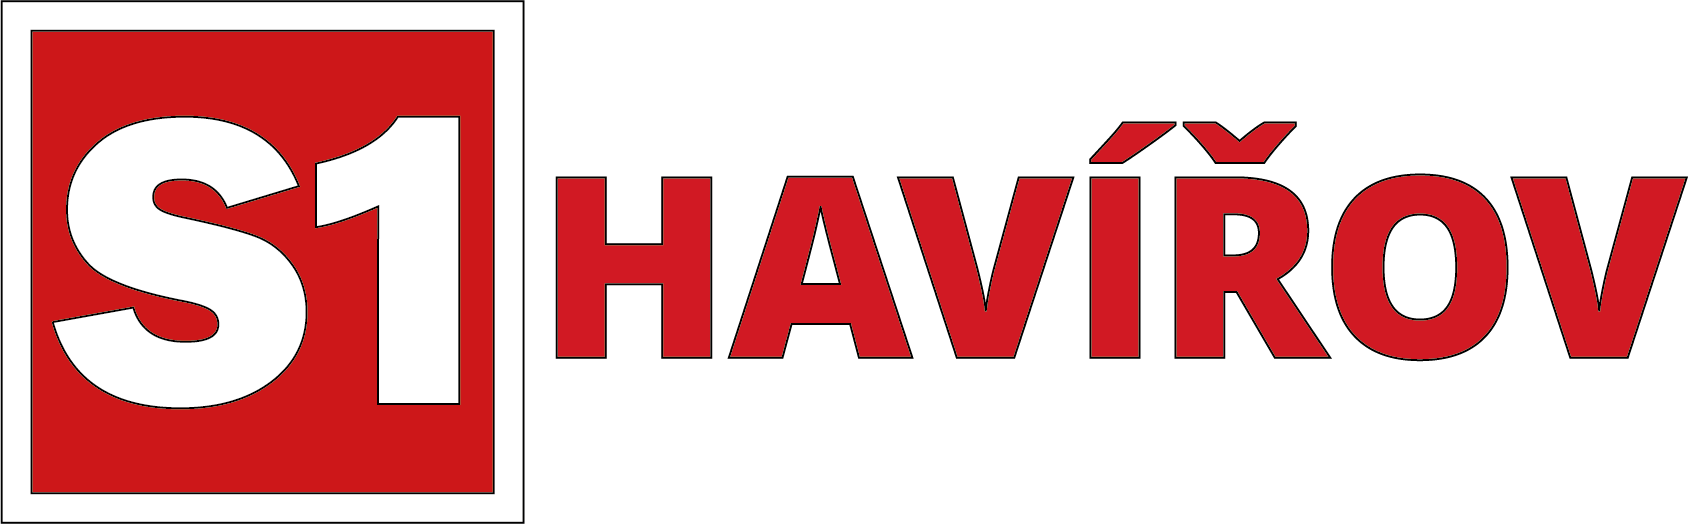 S1 Havirov Logo